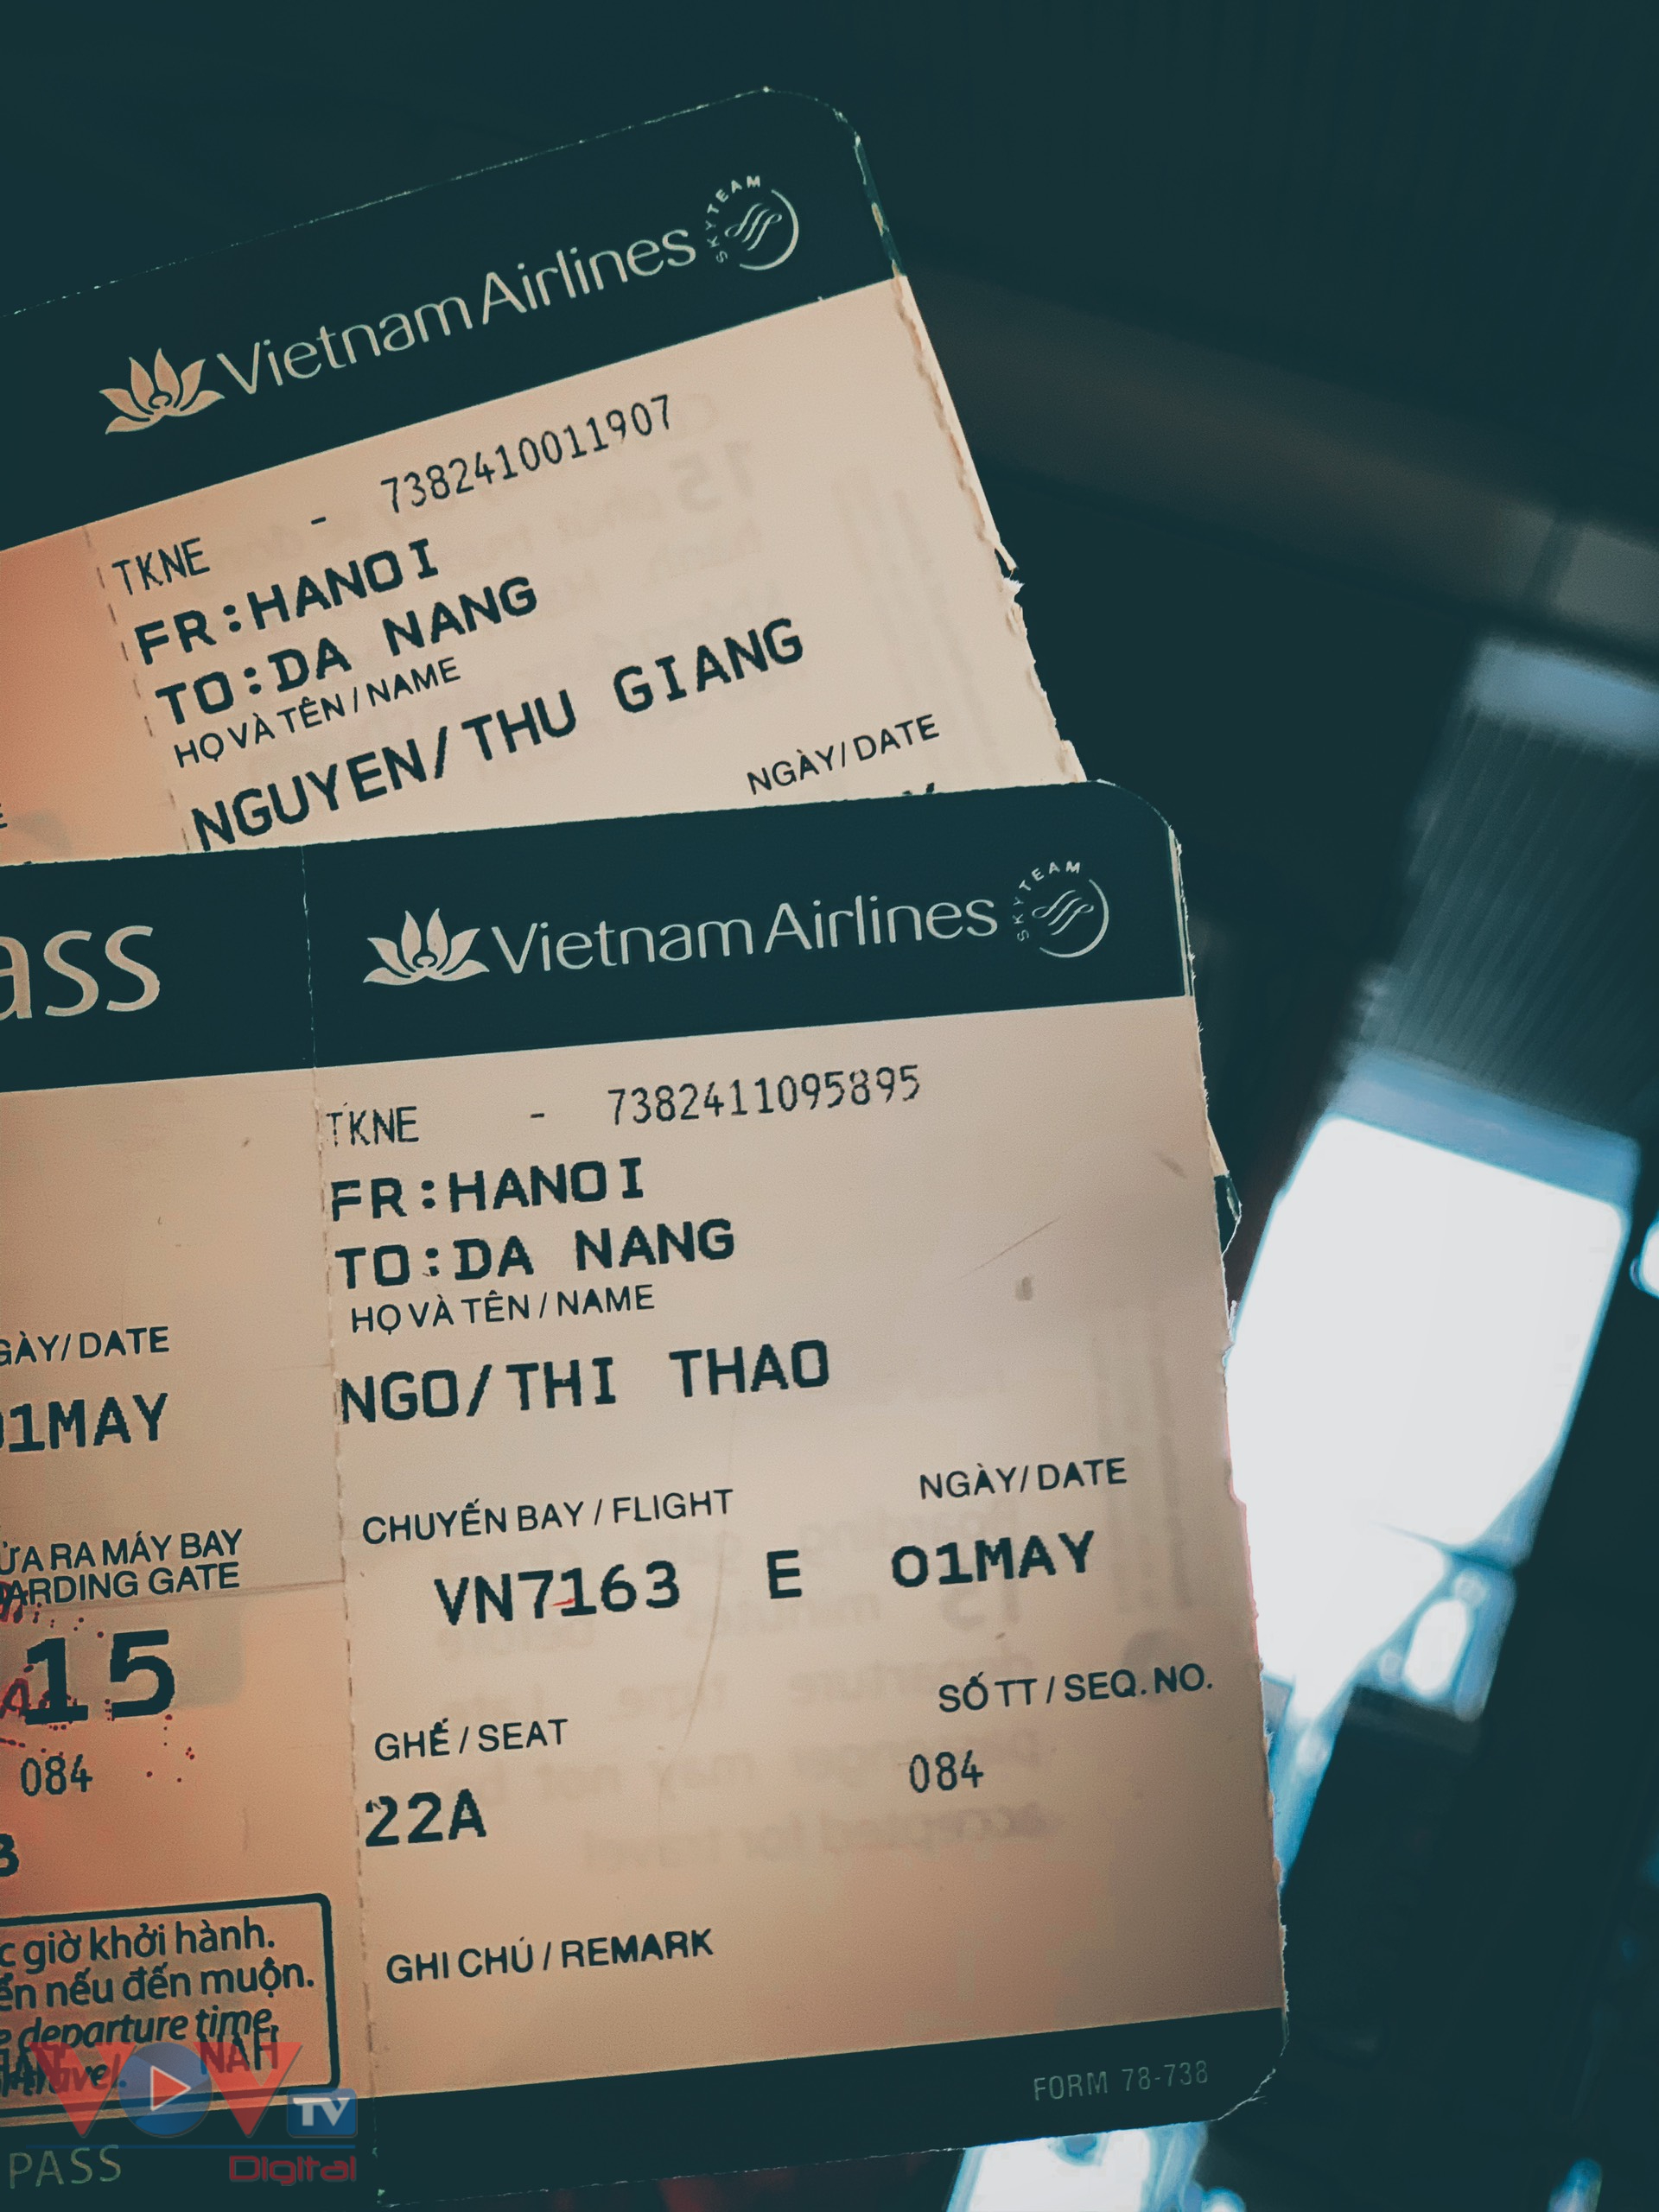 Kinh nghiệm du lịch Đà Nẵng chỉ với 3,5 triệu đồng - Ảnh 1.